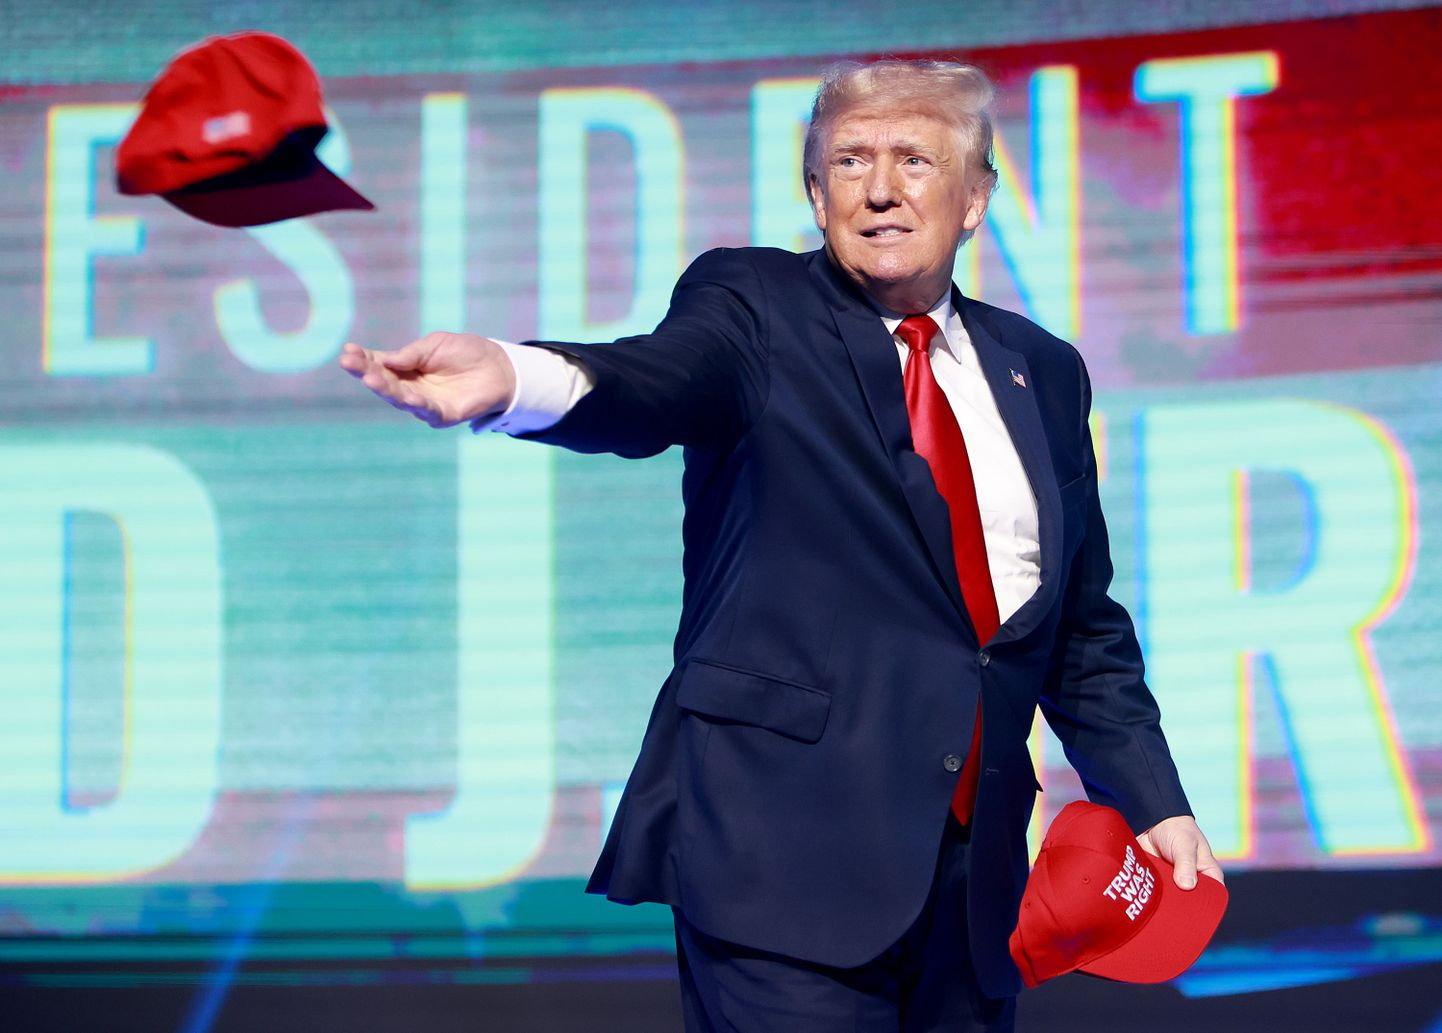 Endine president Donald Trump loobib kampaaniaüritusel mütse rahva sekka, 23. juuli 2022. aastal Floridas.